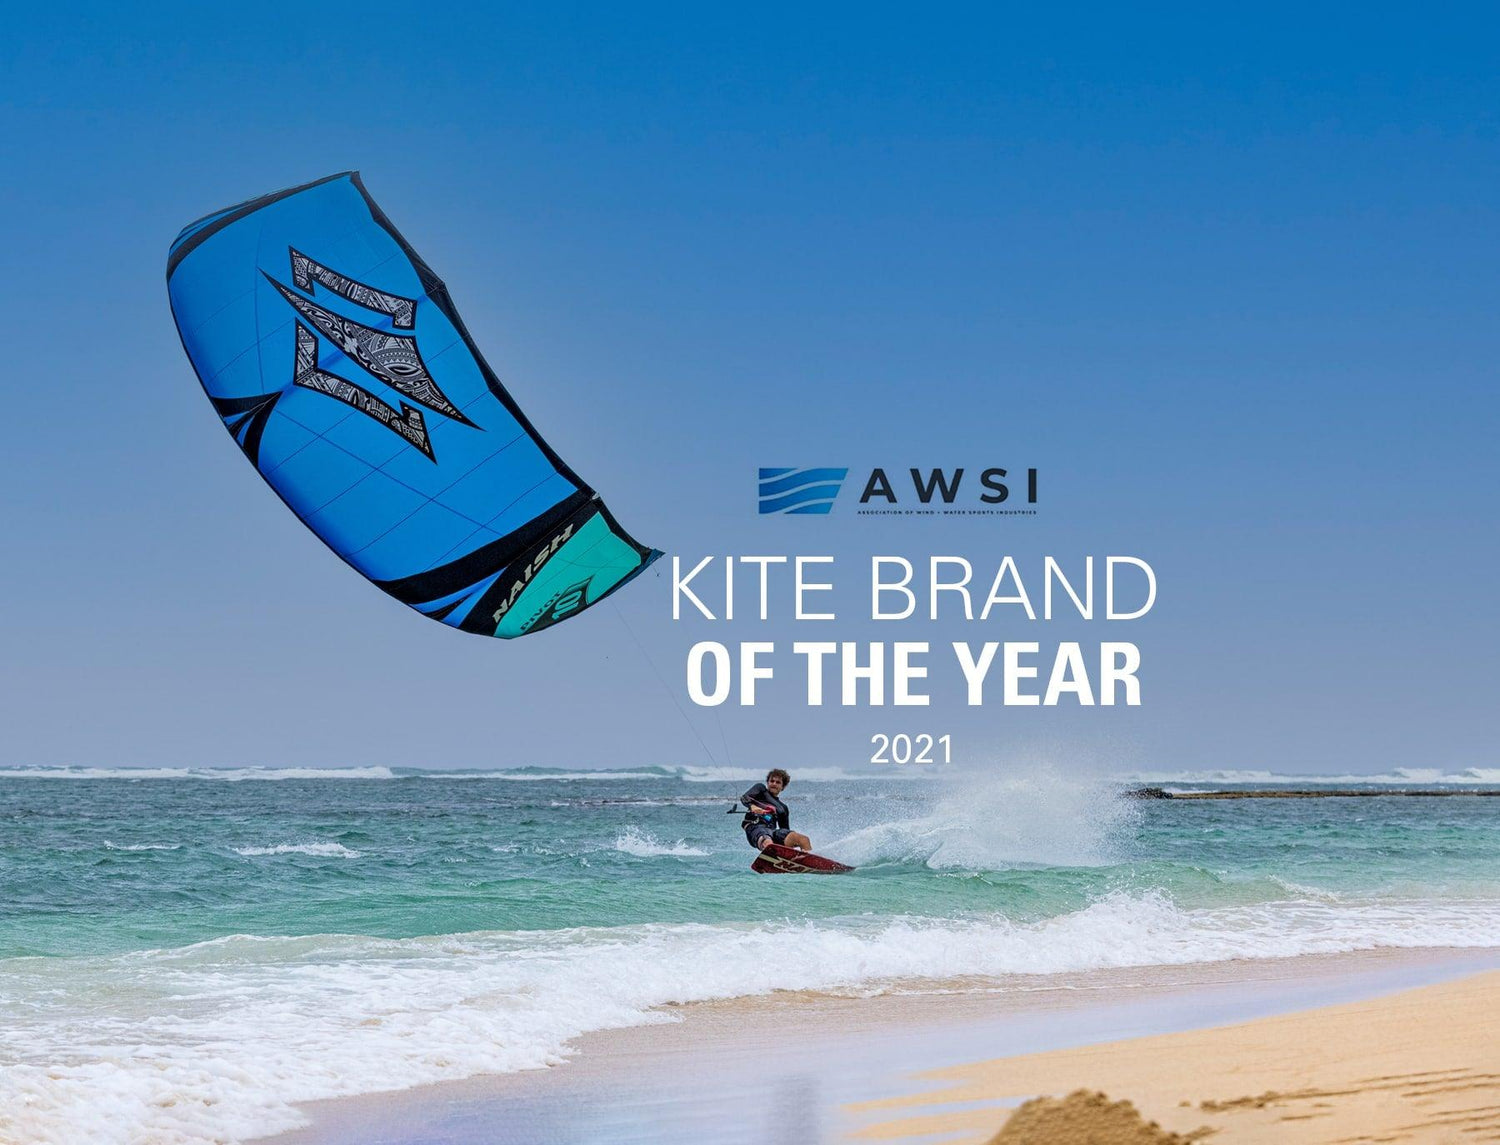 Naish is Voted AWSI's 2021 Kite Brand of the Year - Naish.com